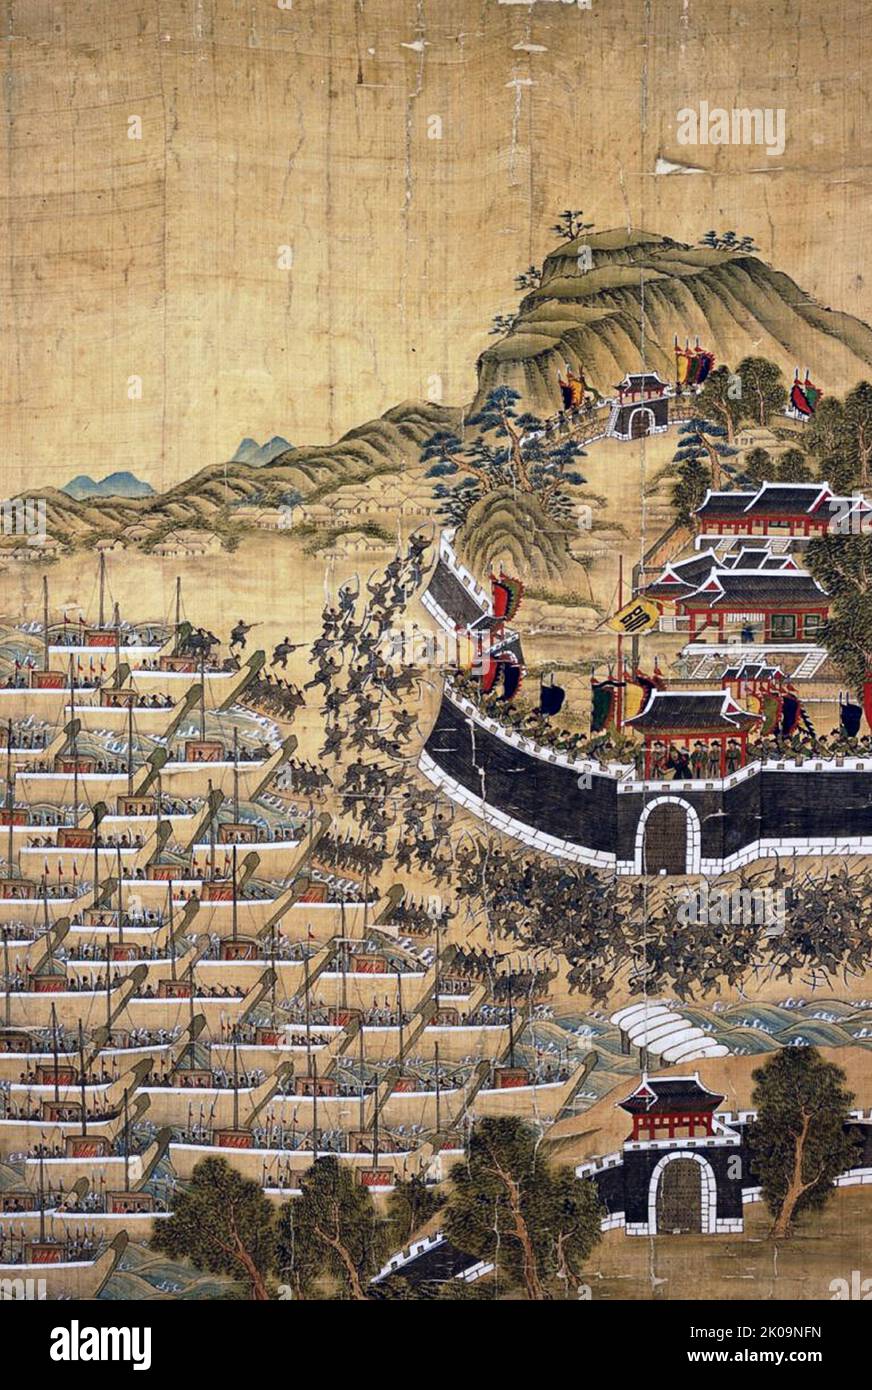 La bataille de Busan de 1592 (bataille de Busanpo ou bataille de la baie de Busan), un bombardement naval de navires japonais ancrés à Busan. Yi Sun-Sin a réussi à détruire plus de 100 navires japonais et a reculé avec un minimum de pertes. C'était un engagement naval qui a eu lieu le 1 septembre 1592 pendant la première phase des invasions japonaises de Corée. Banque D'Images